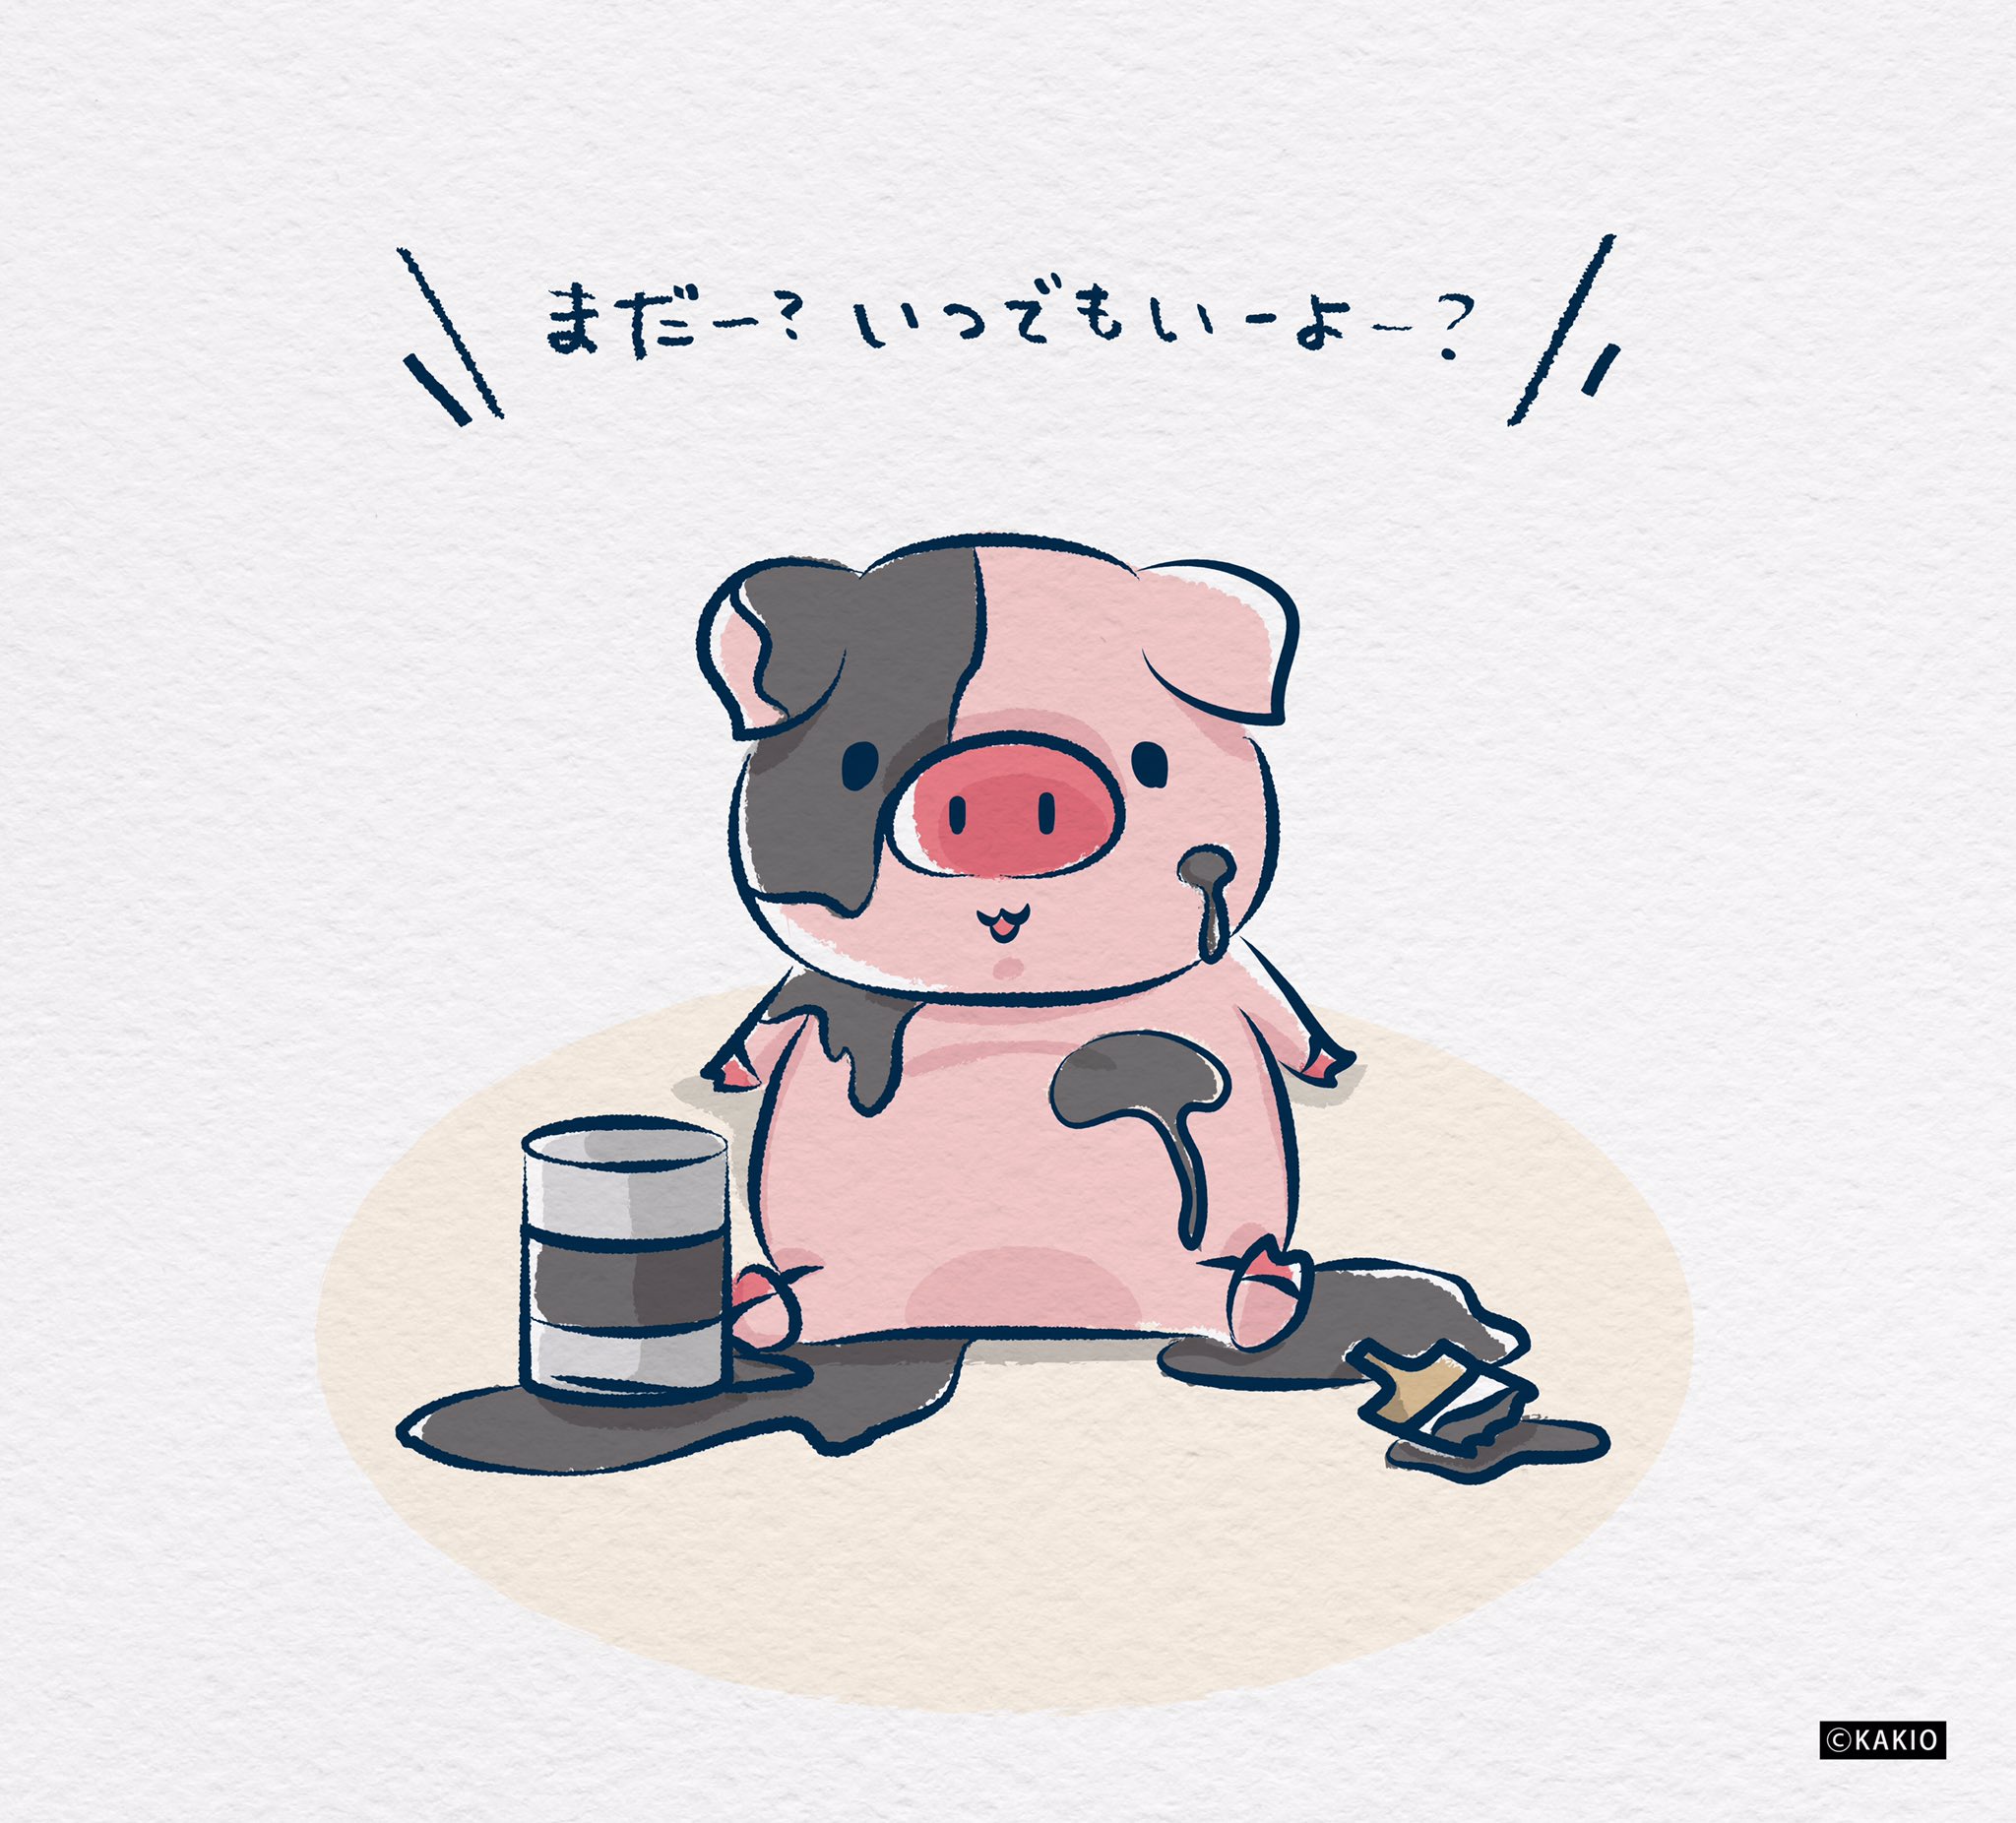 かきお Suzuriで販売中 在 Twitter 上 今年も豚年を待ち続けてる図 私の中では年中豚年フィーバーです イラスト いらすと好きな人と繋がりたい かわいいイラスト ゆるいイラスト 絵描き 落書き デザイン 干支 21年 ブタ ミニブタ マイクロブタ